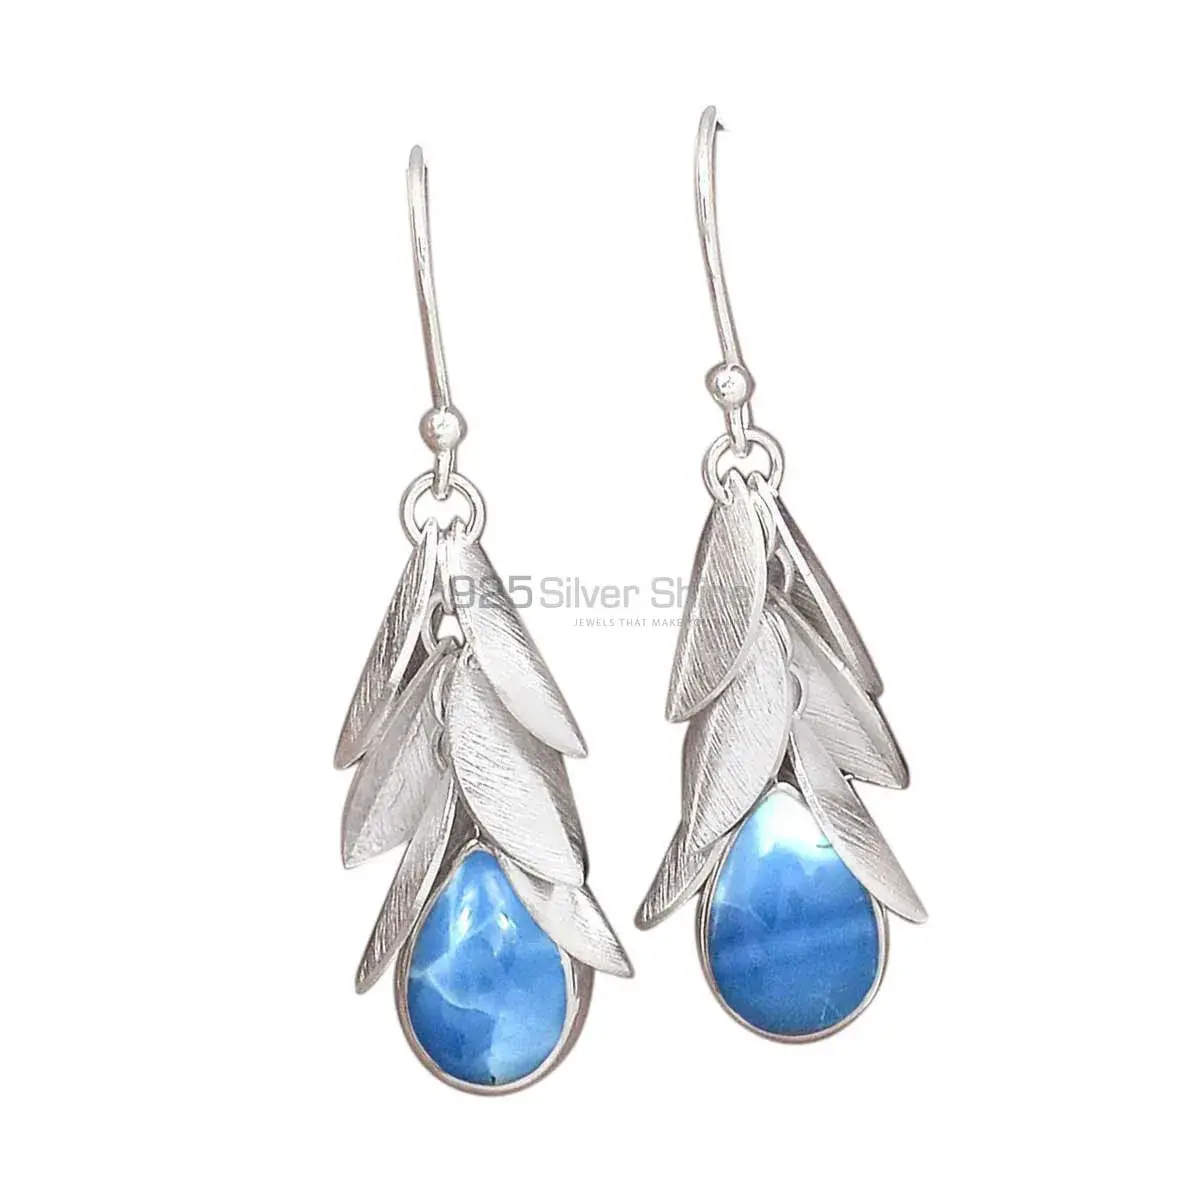 Beautiful 925 Sterling Silver Earrings In Blue Lace Agate Gemstone Jewelry 925SE3022